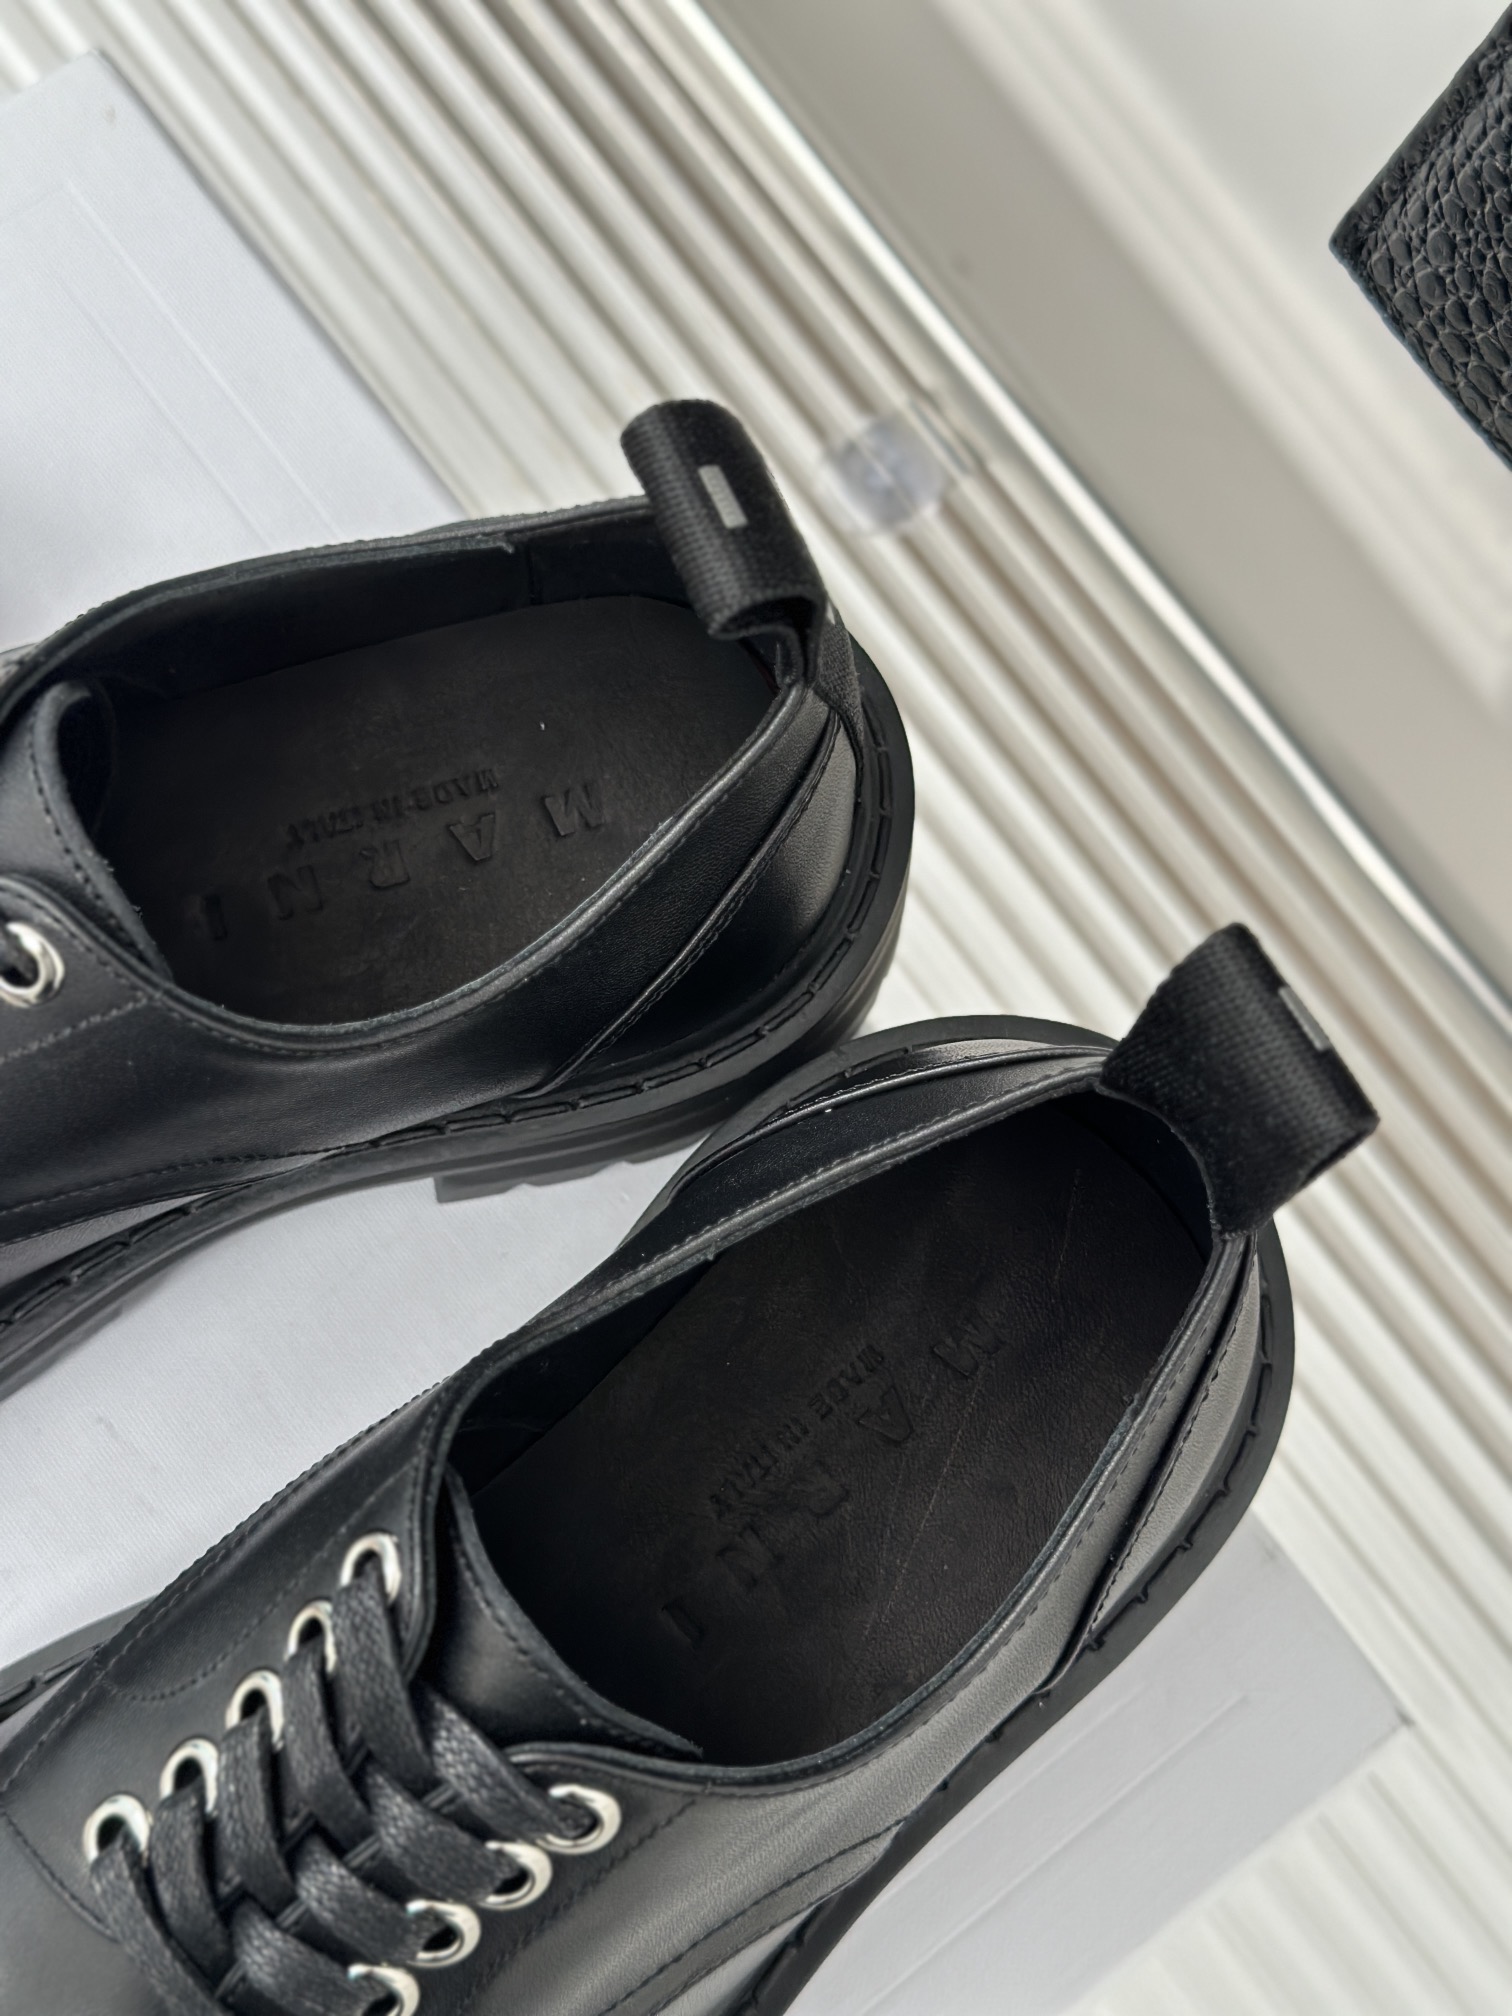 Marni玛尼23S经典四季厚底系带小皮鞋鞋型整体特别简洁还复古配色干净不过时是一双舒适和质感并存的小白